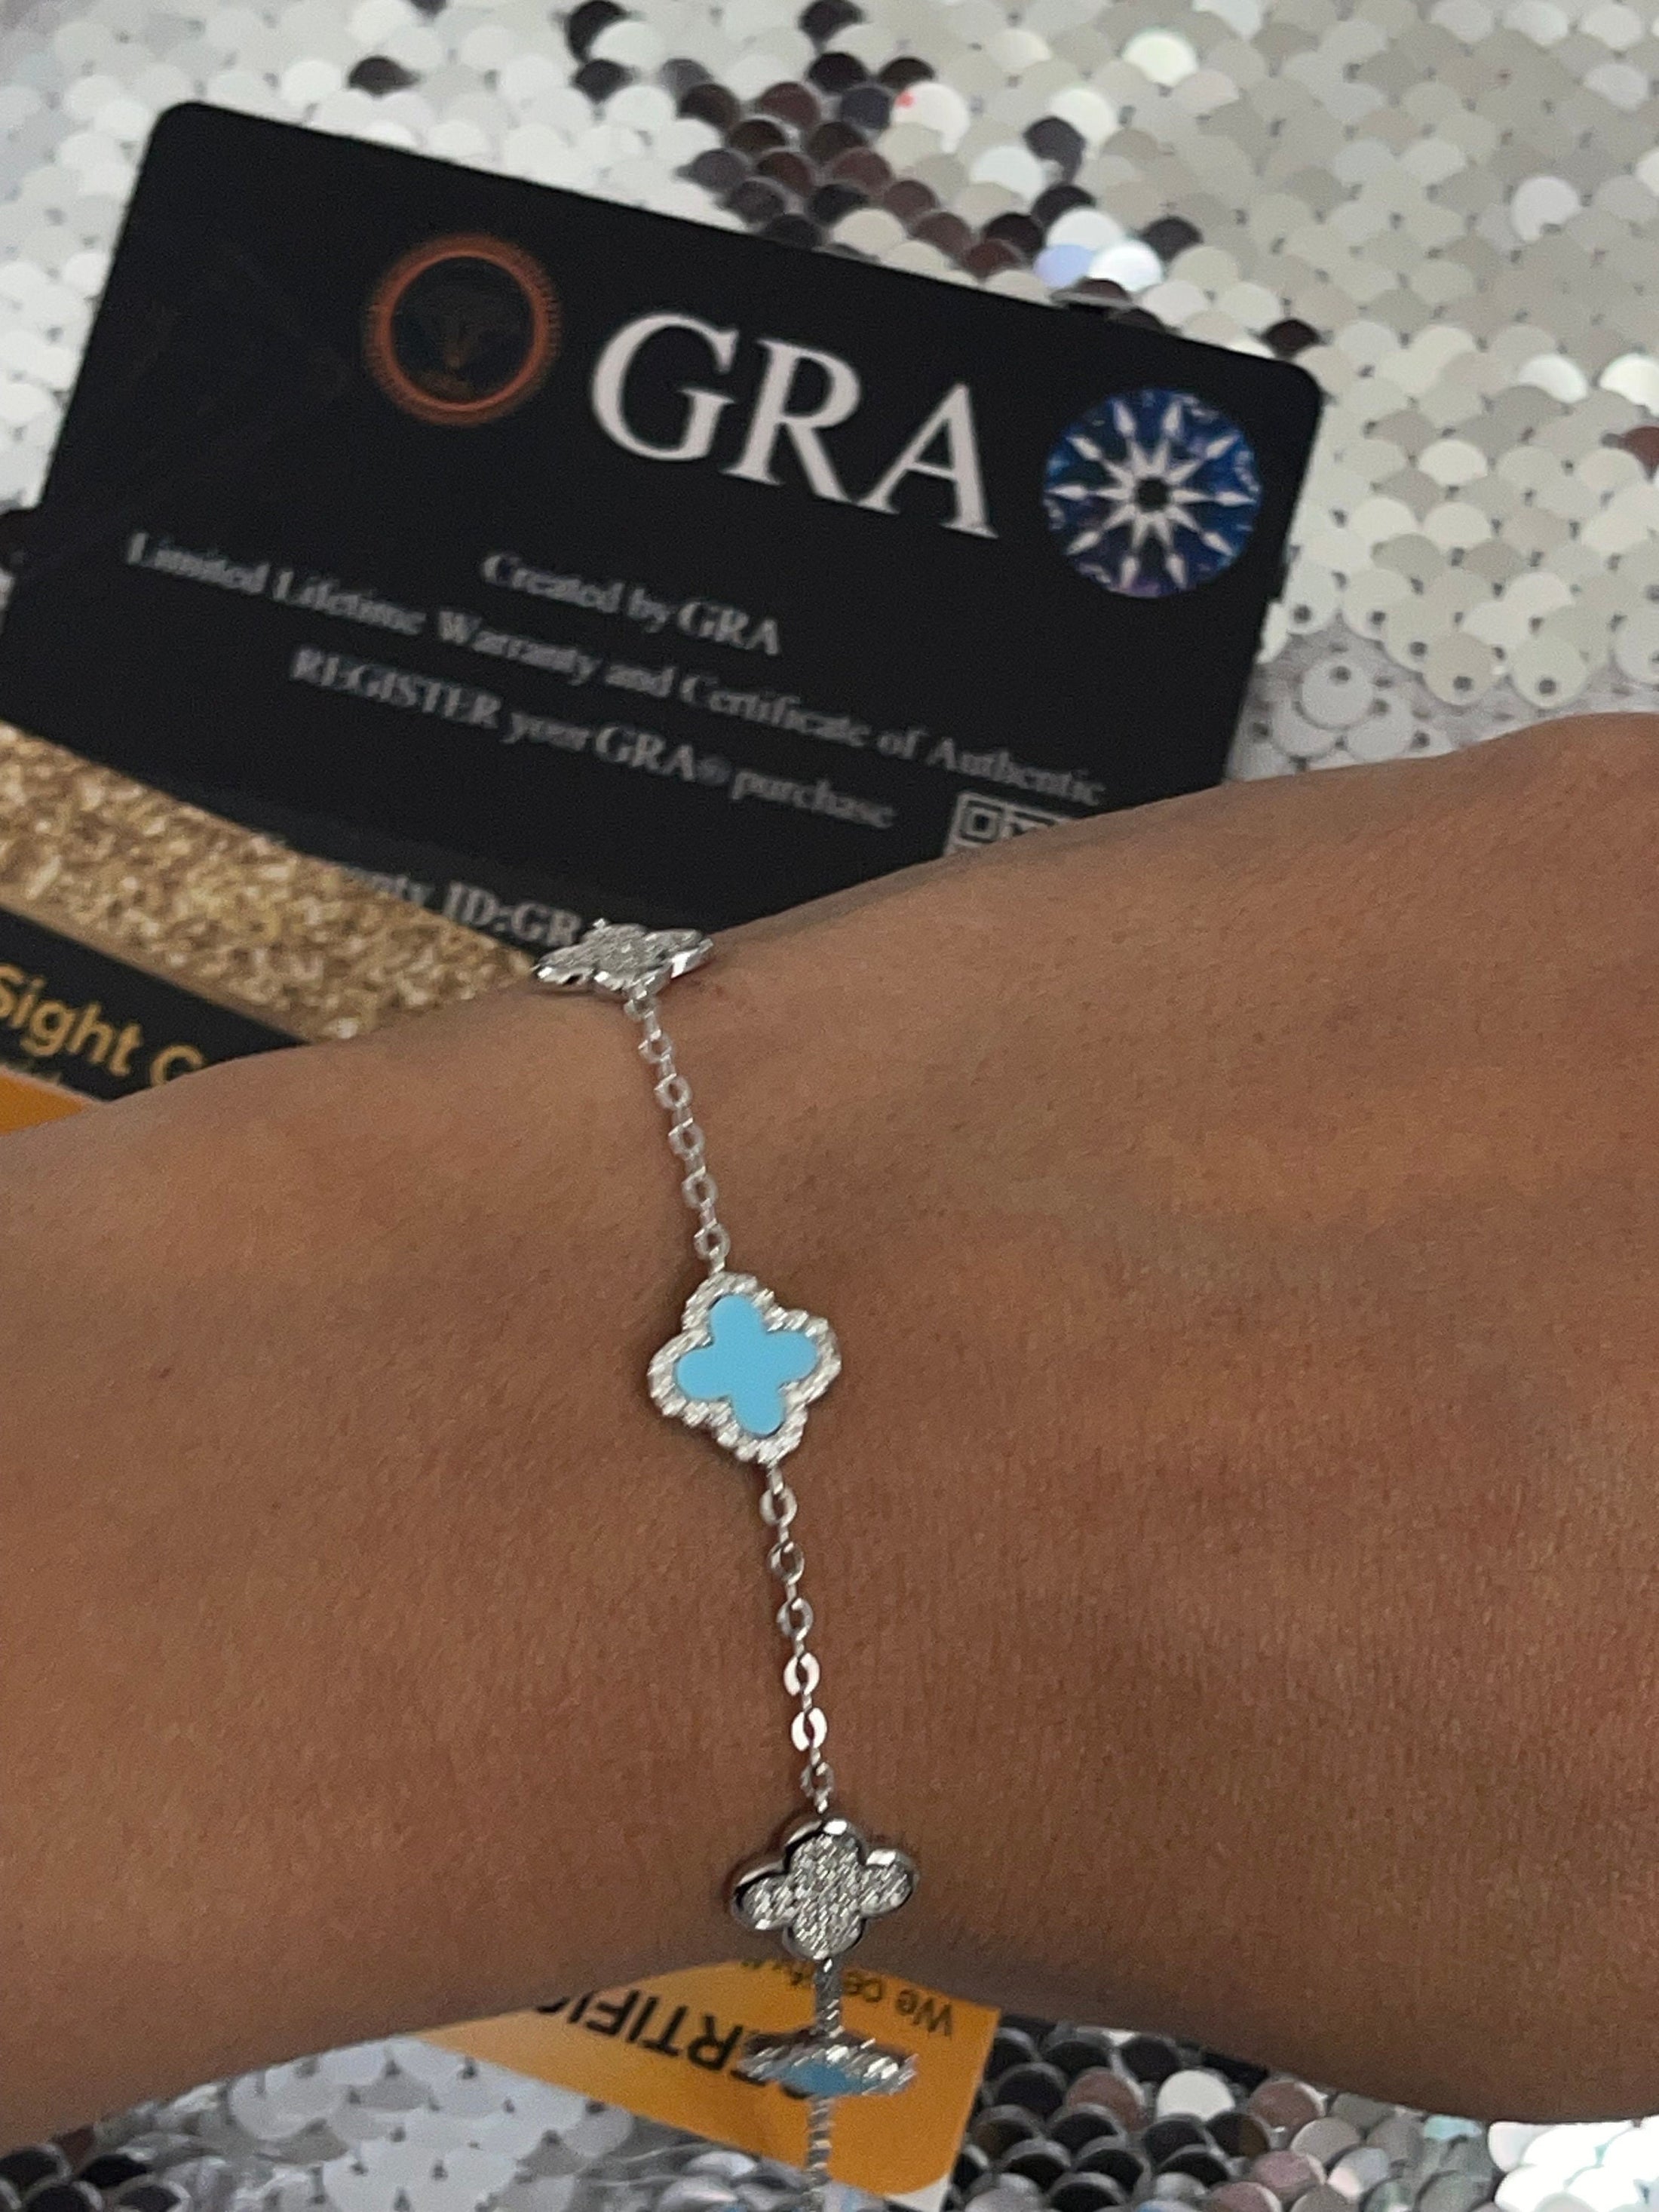 VVS Diamond Gra certified real Moissanite bracelet, 14k white gold vermeil clover bracelet gift for her, Christmas gifts, anniversary gifts